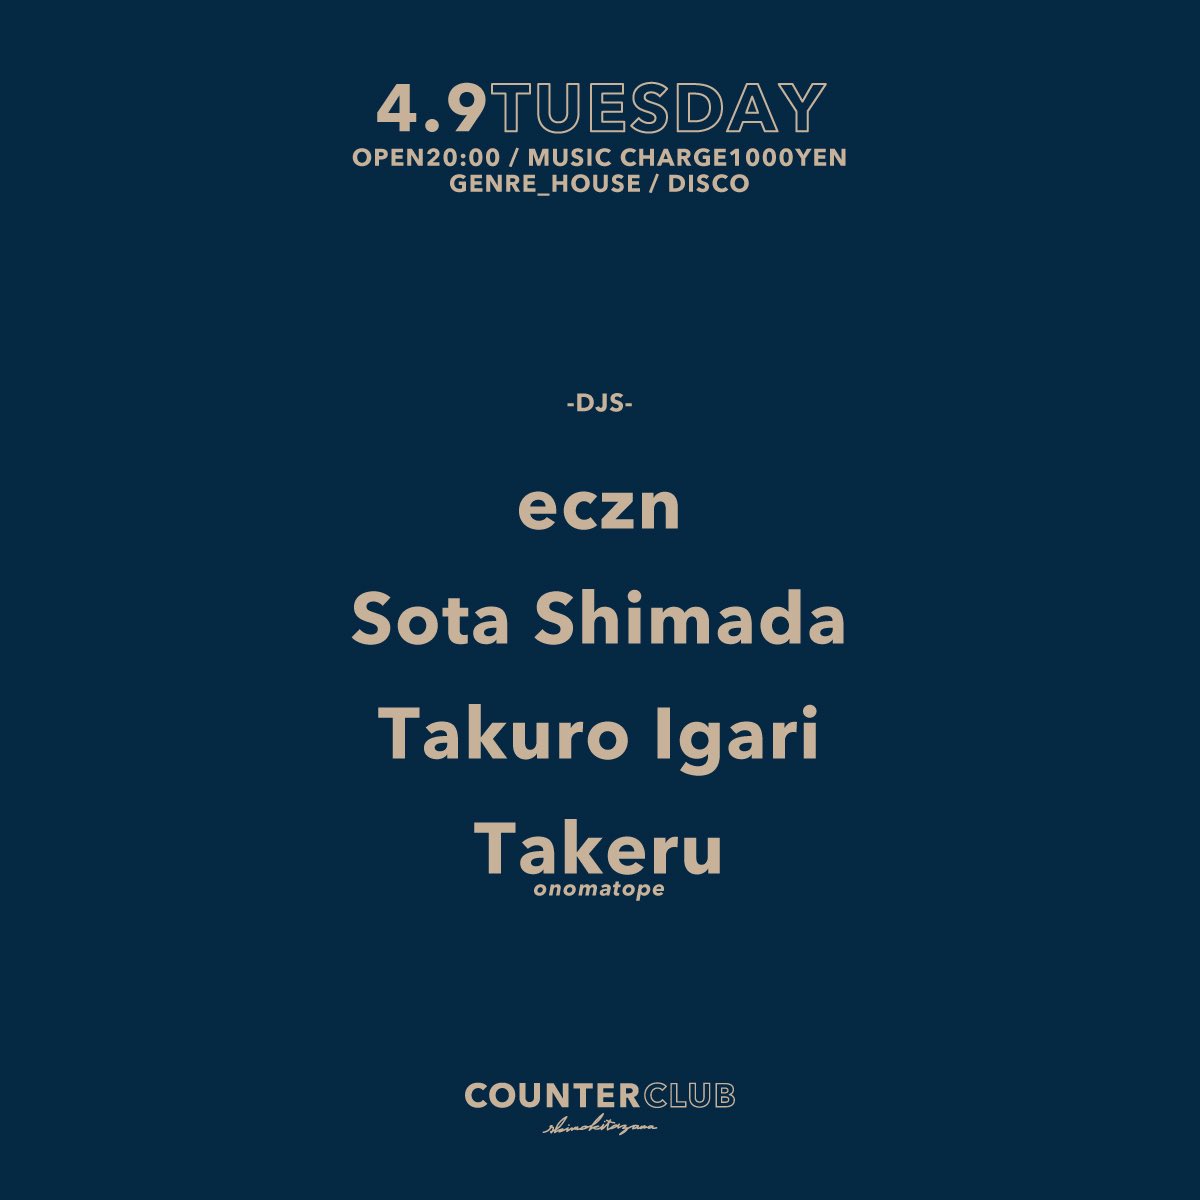 【TONIGHT】 4.9 TUESDAY OPEN20:00 MUSIC CHARGE 1000YEN GENRE HOUSE / DISCO -DJS- eczn Sota Shimada Takuro Igari Takeru